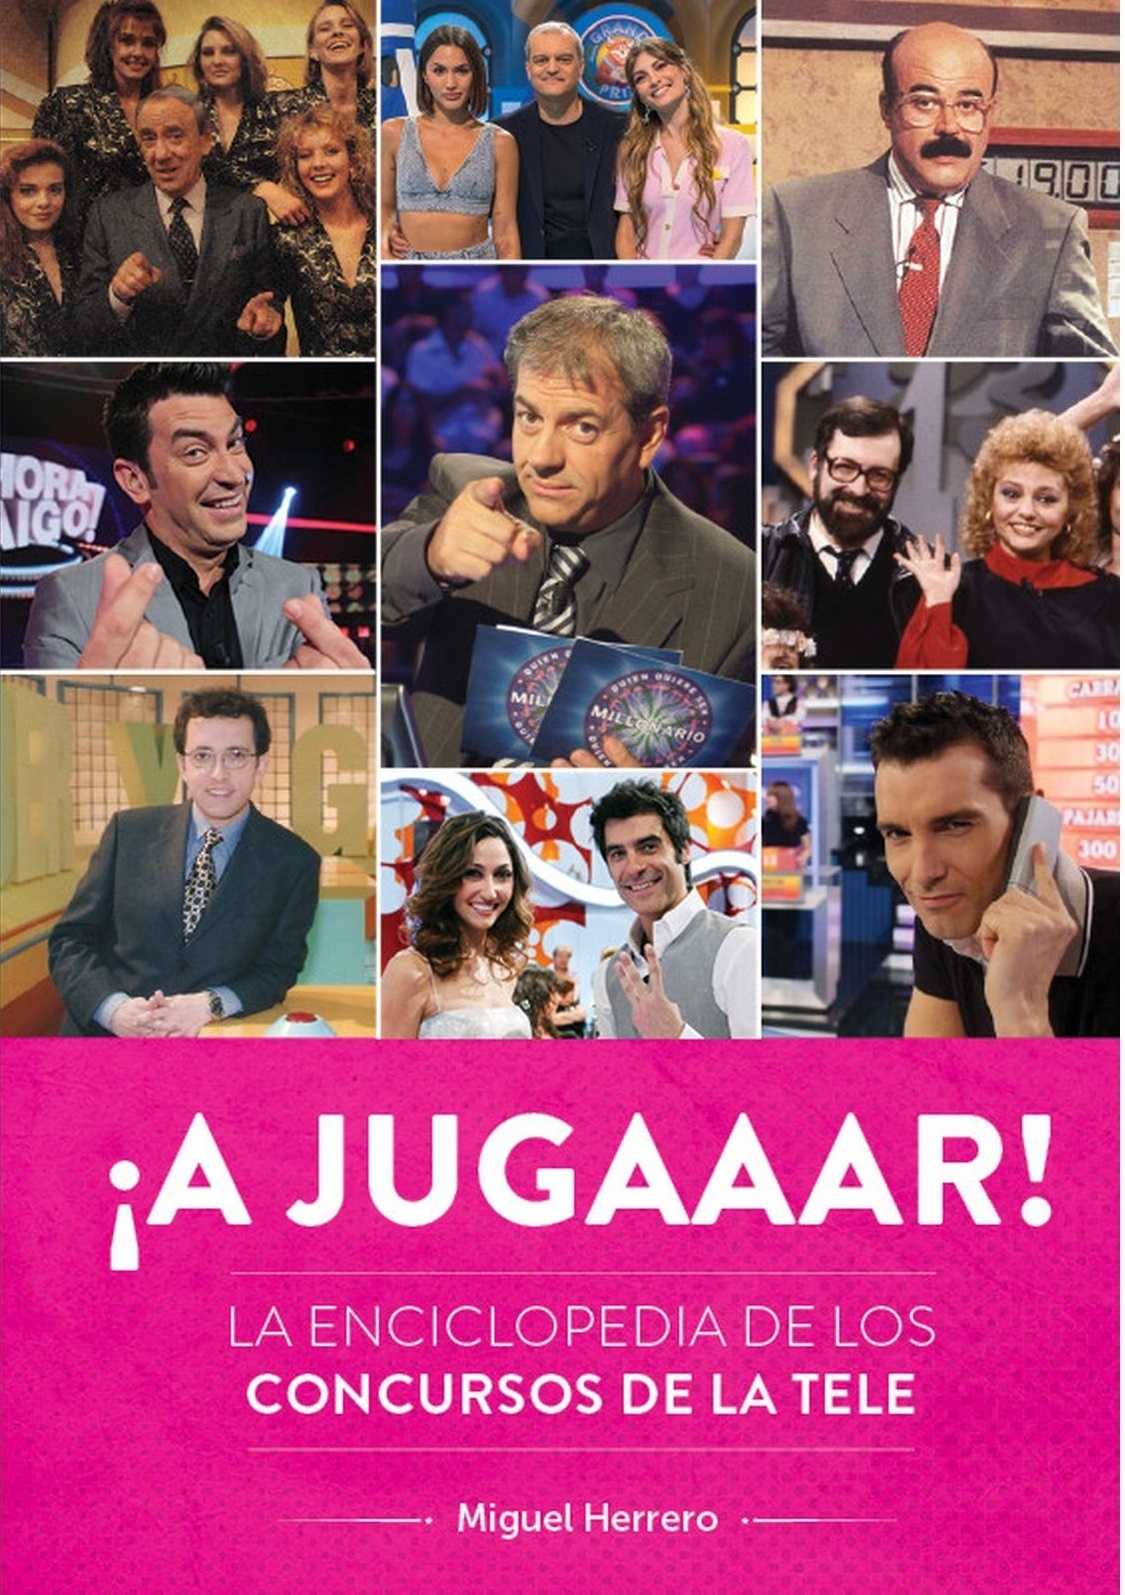 A jugaaar! La enciclopedia de los concursos de la tele. 